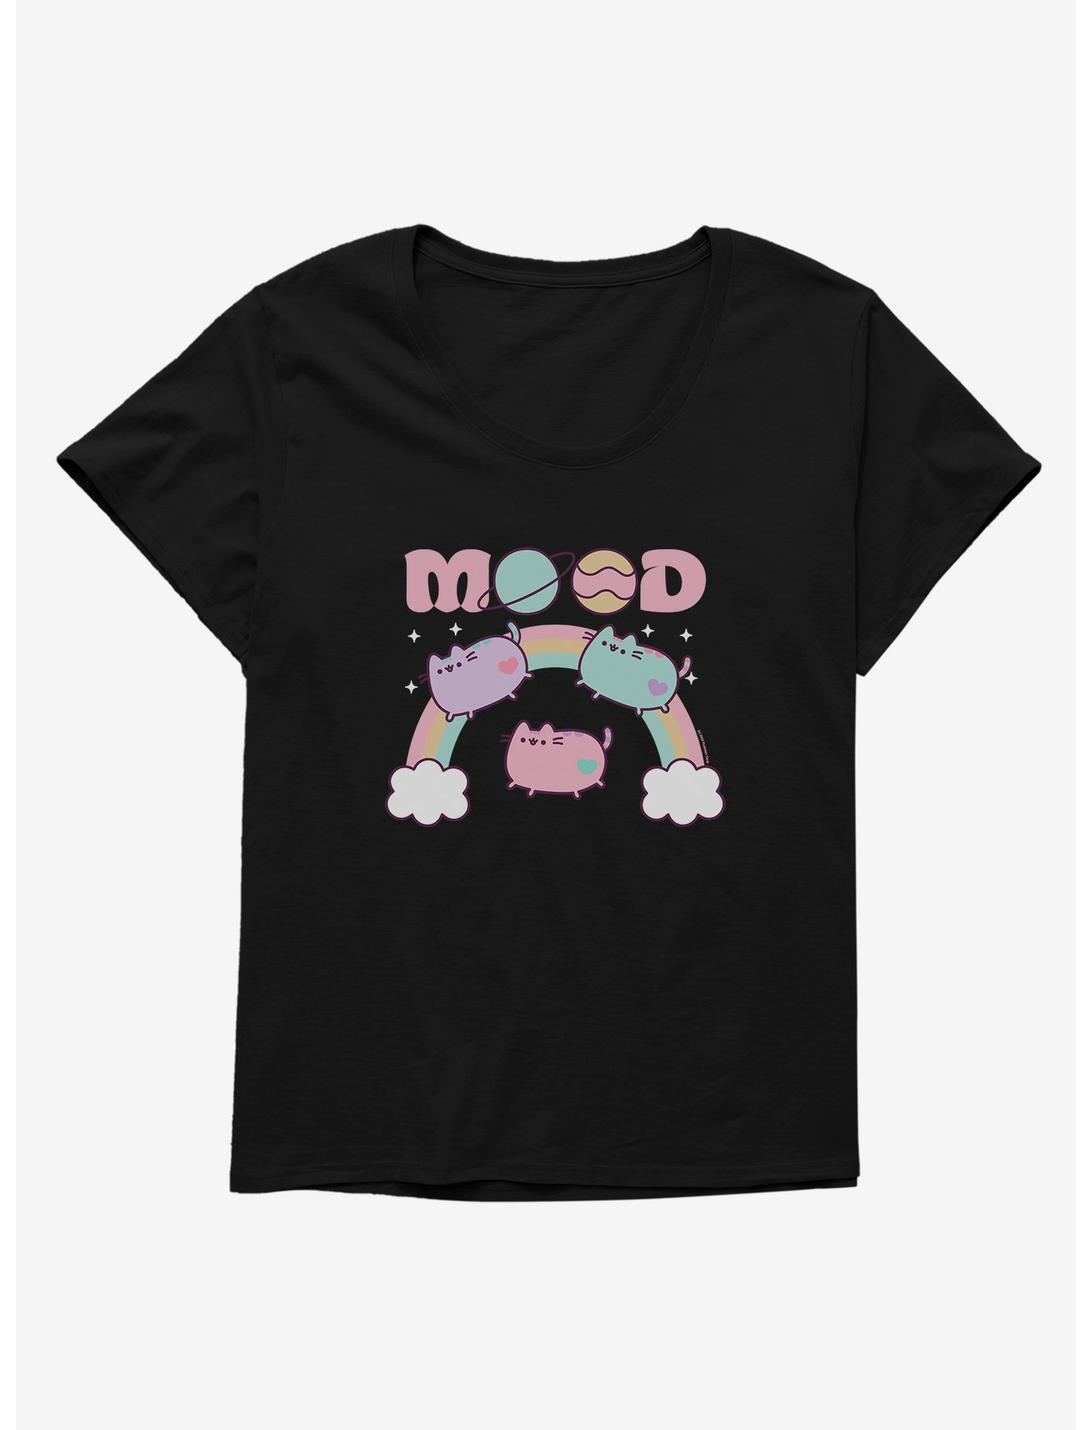 Pusheen Mood Girls T-Shirt Plus Size, BLACK, hi-res